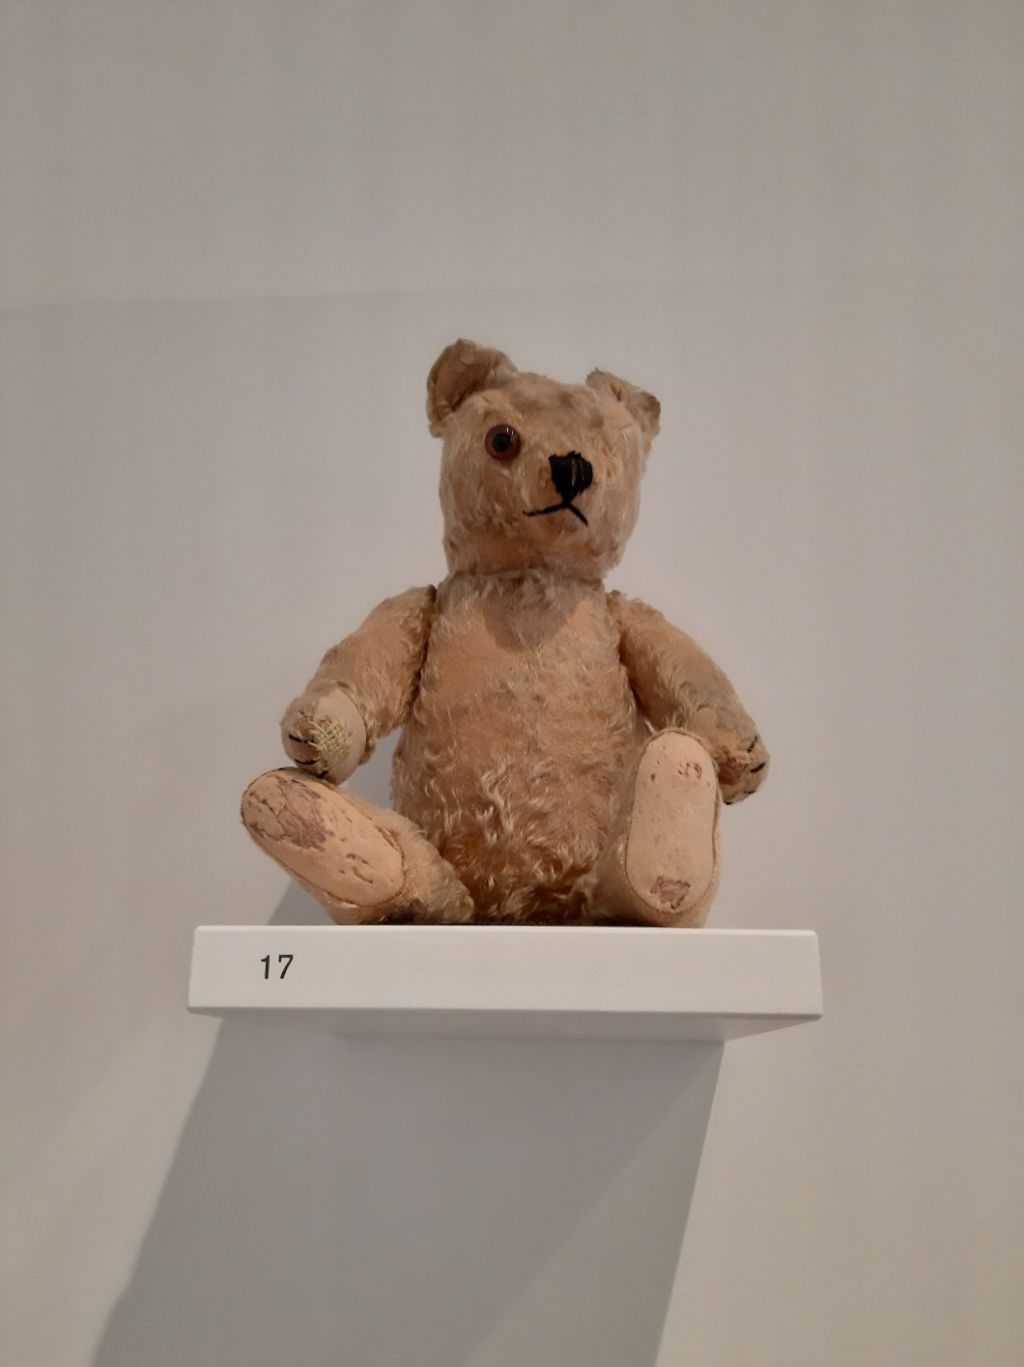 Auf einem weissen Tablar steht ganz klein die Zahl 17. Darauf sitzt ein Teddybär.